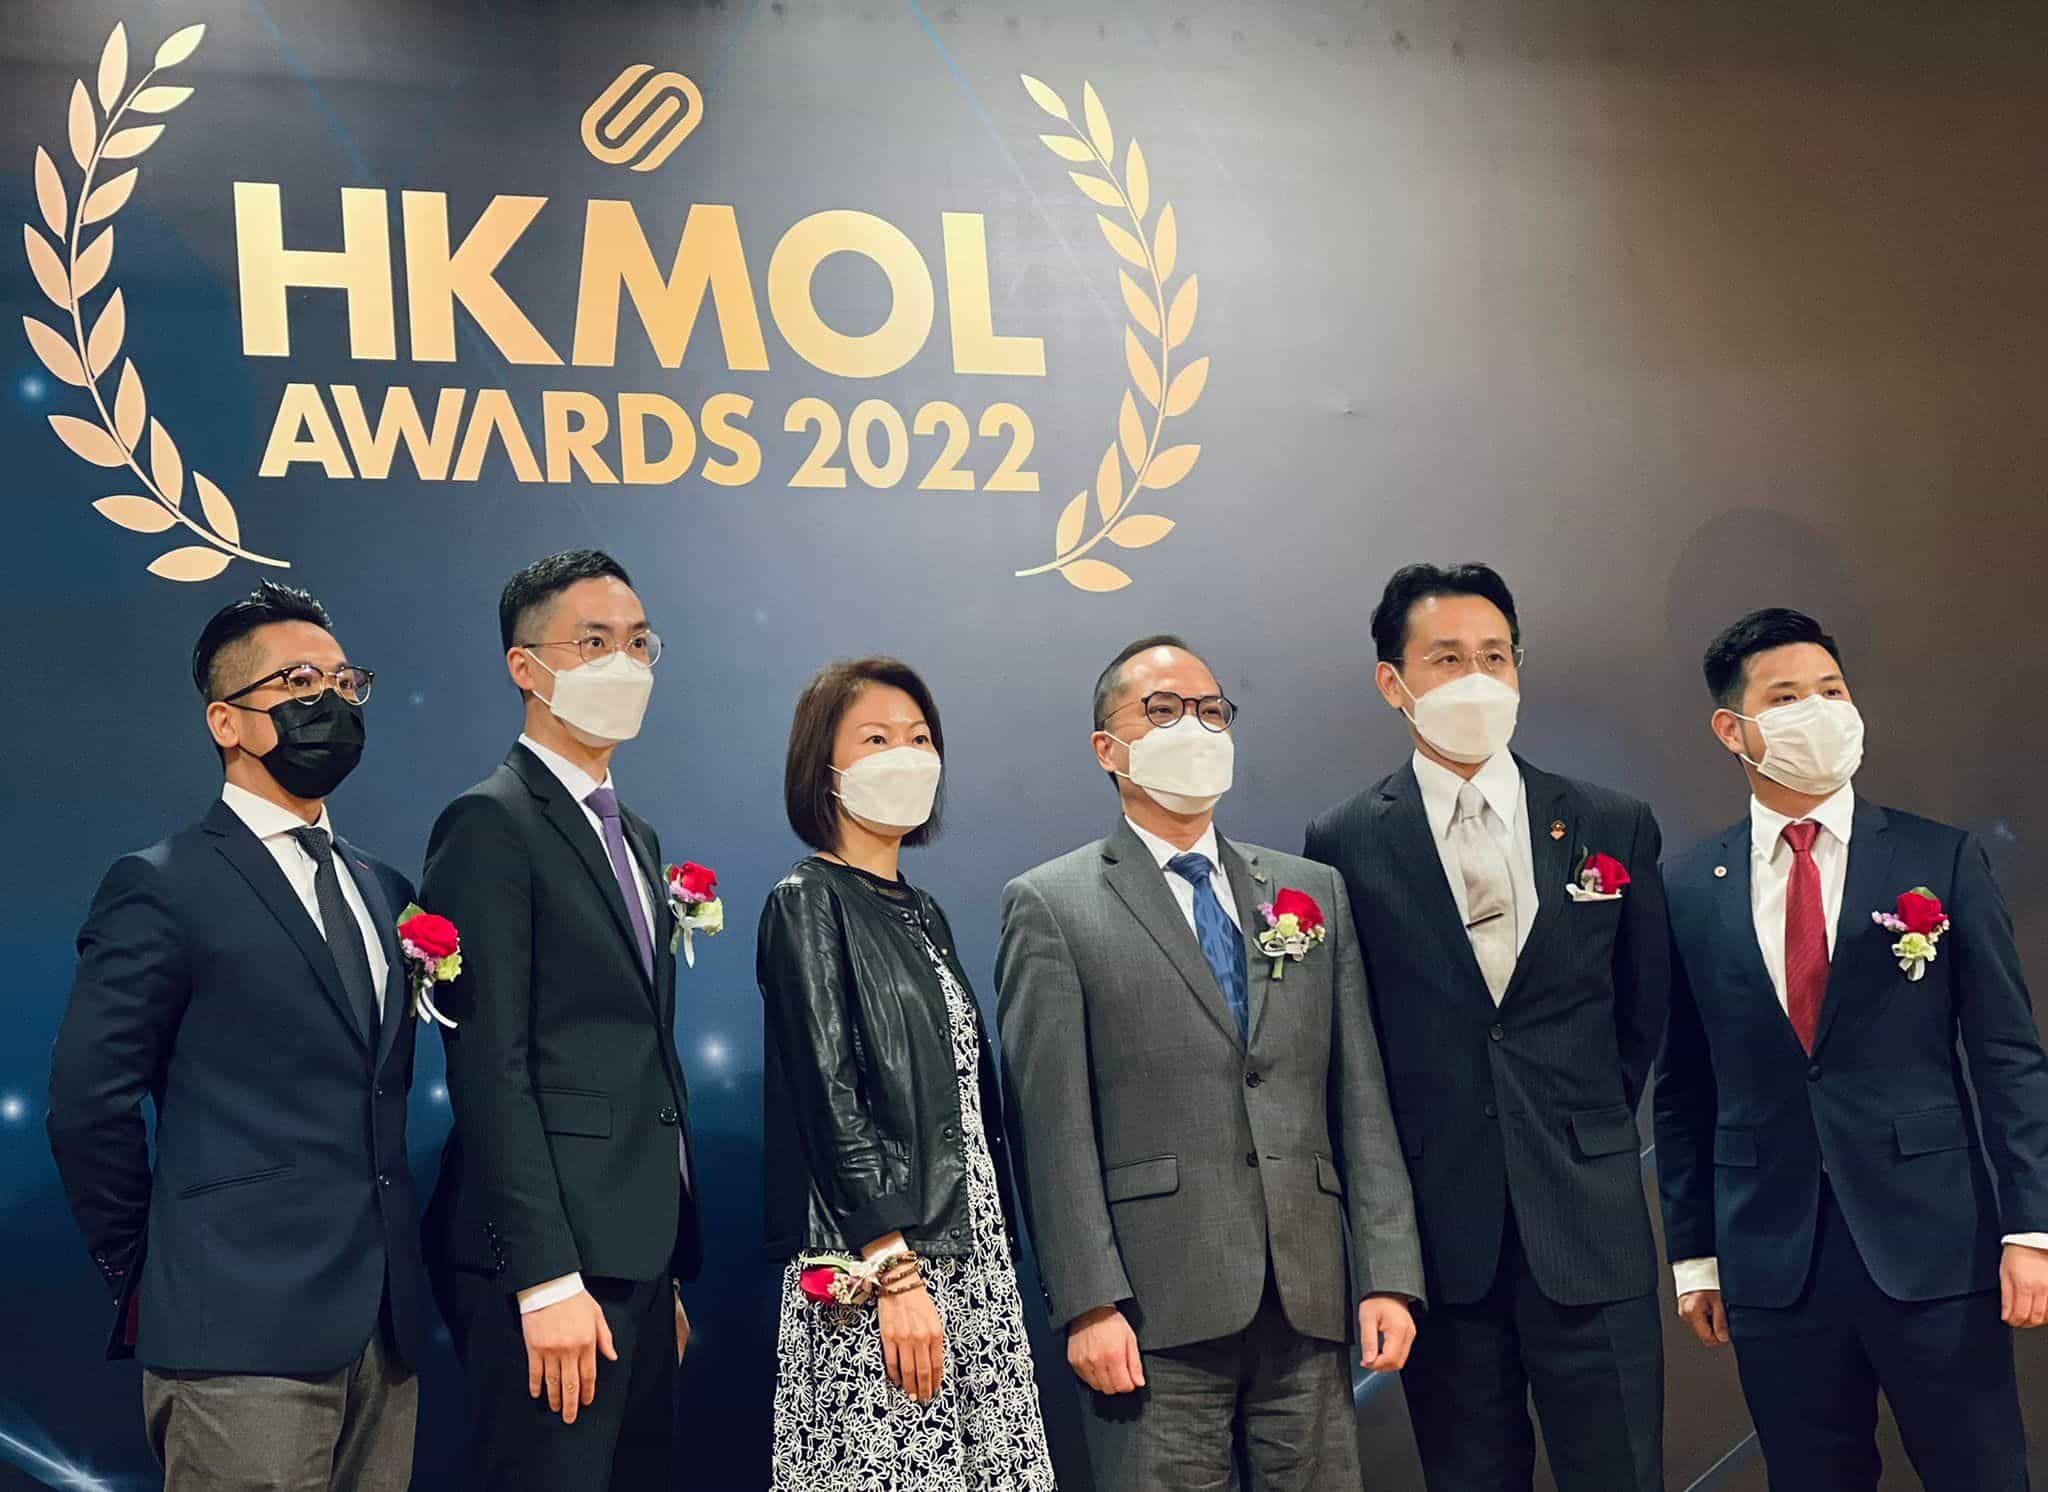 香港青年創業家總商會 - Corphub HKMOL Awards 2022 頒獎典禮